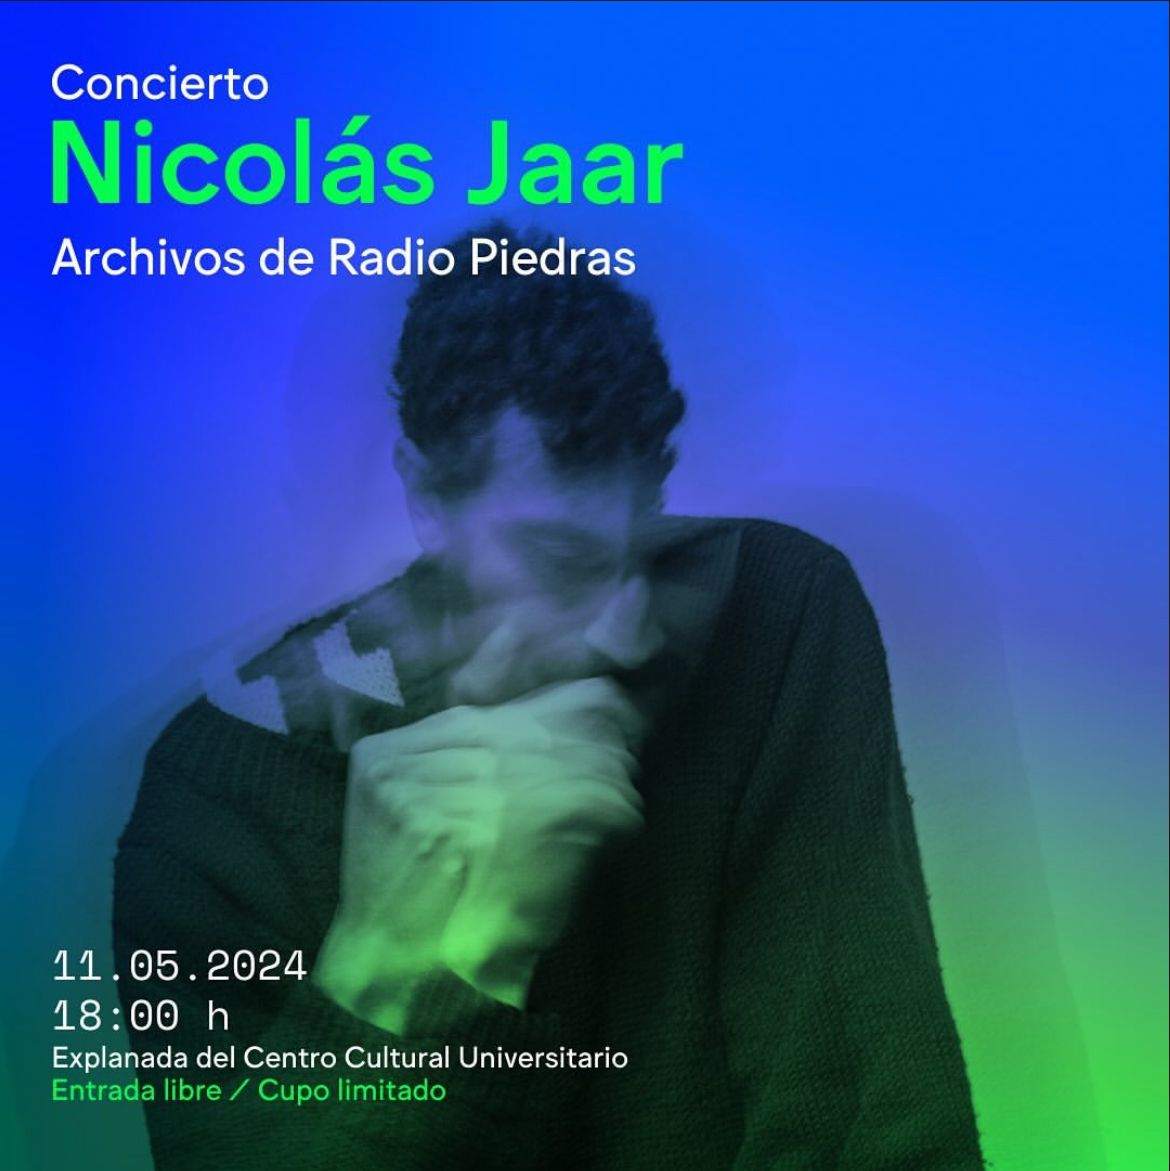 Concierto: Archivos de Radio Piedras - フライヤー表